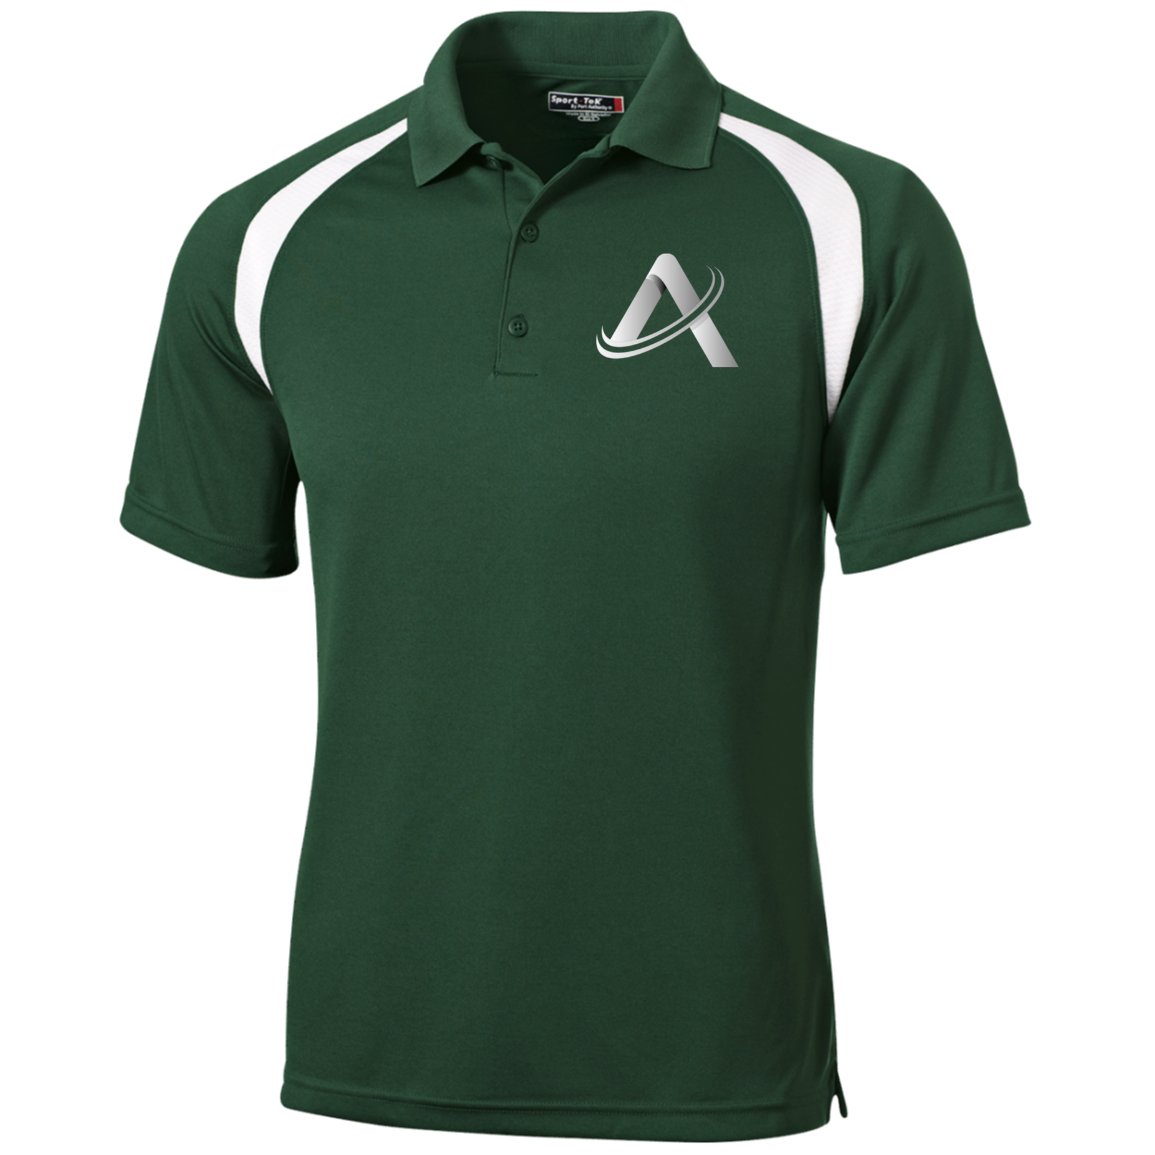 ATHLETiX Moisture Wicking Golf Shirt